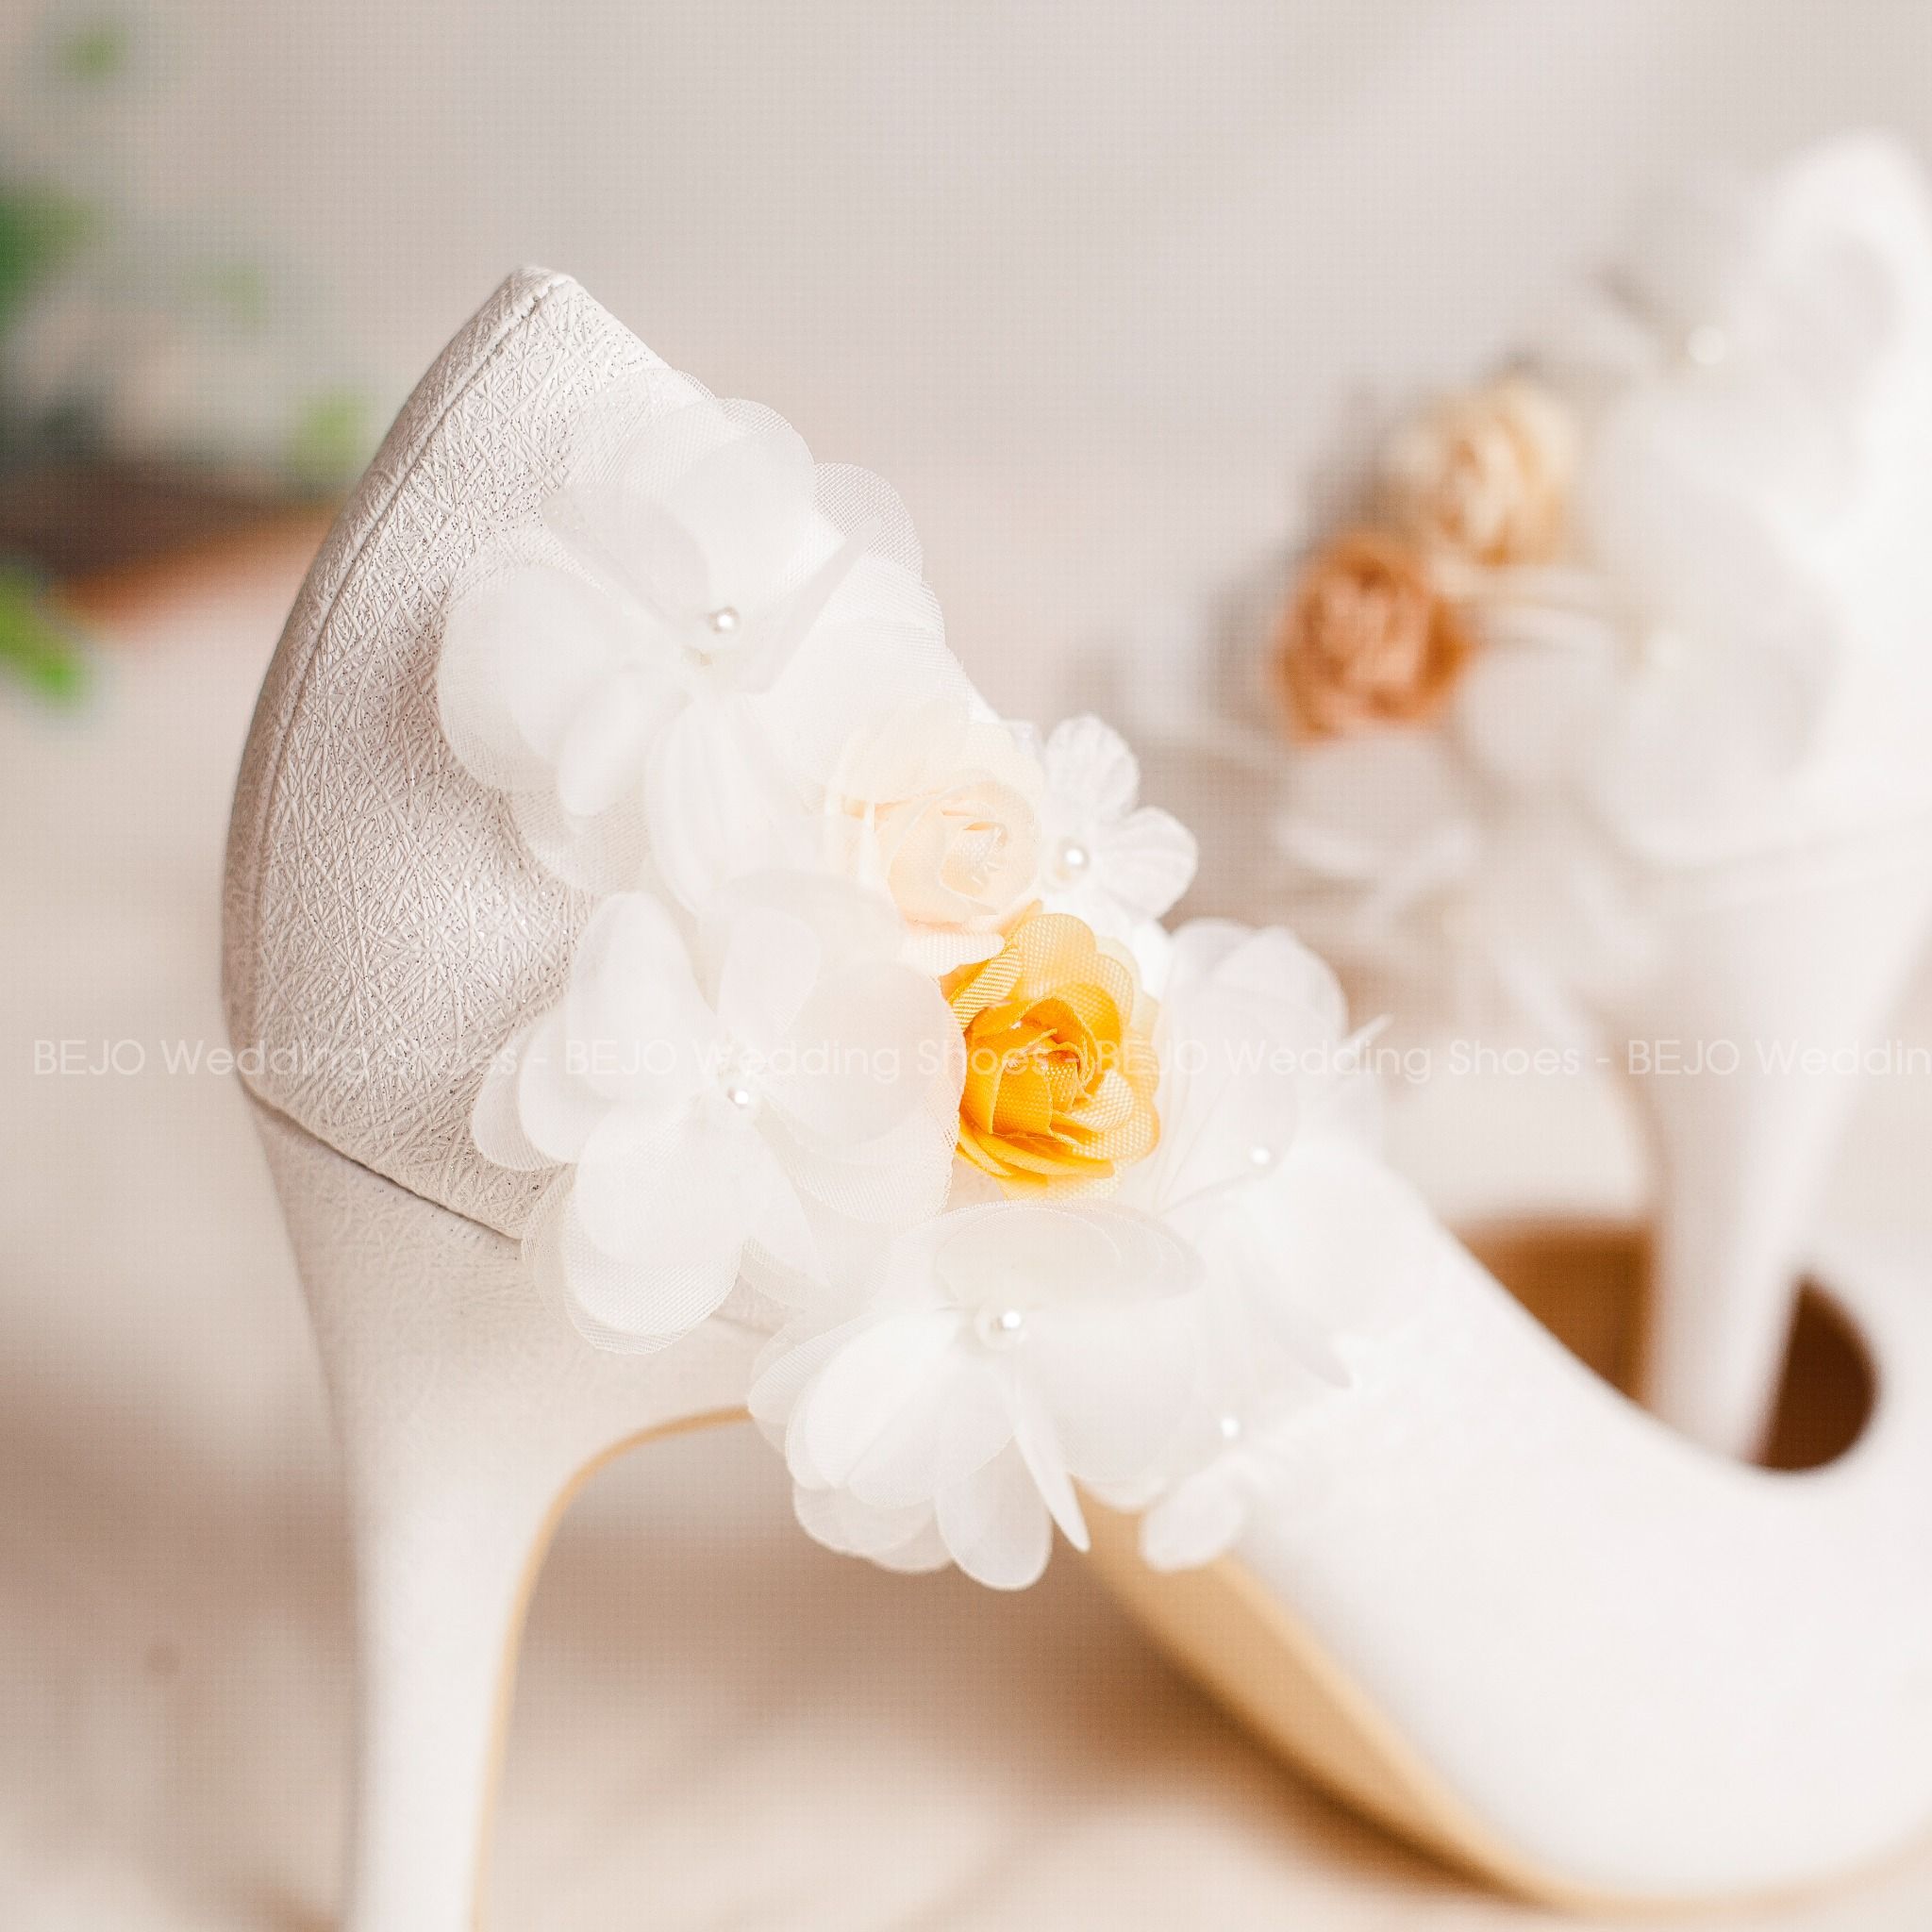  Giày cưới - Giày cô dâu cao cấp BEJO H51.04.TRANG.HOAVOANLUA 